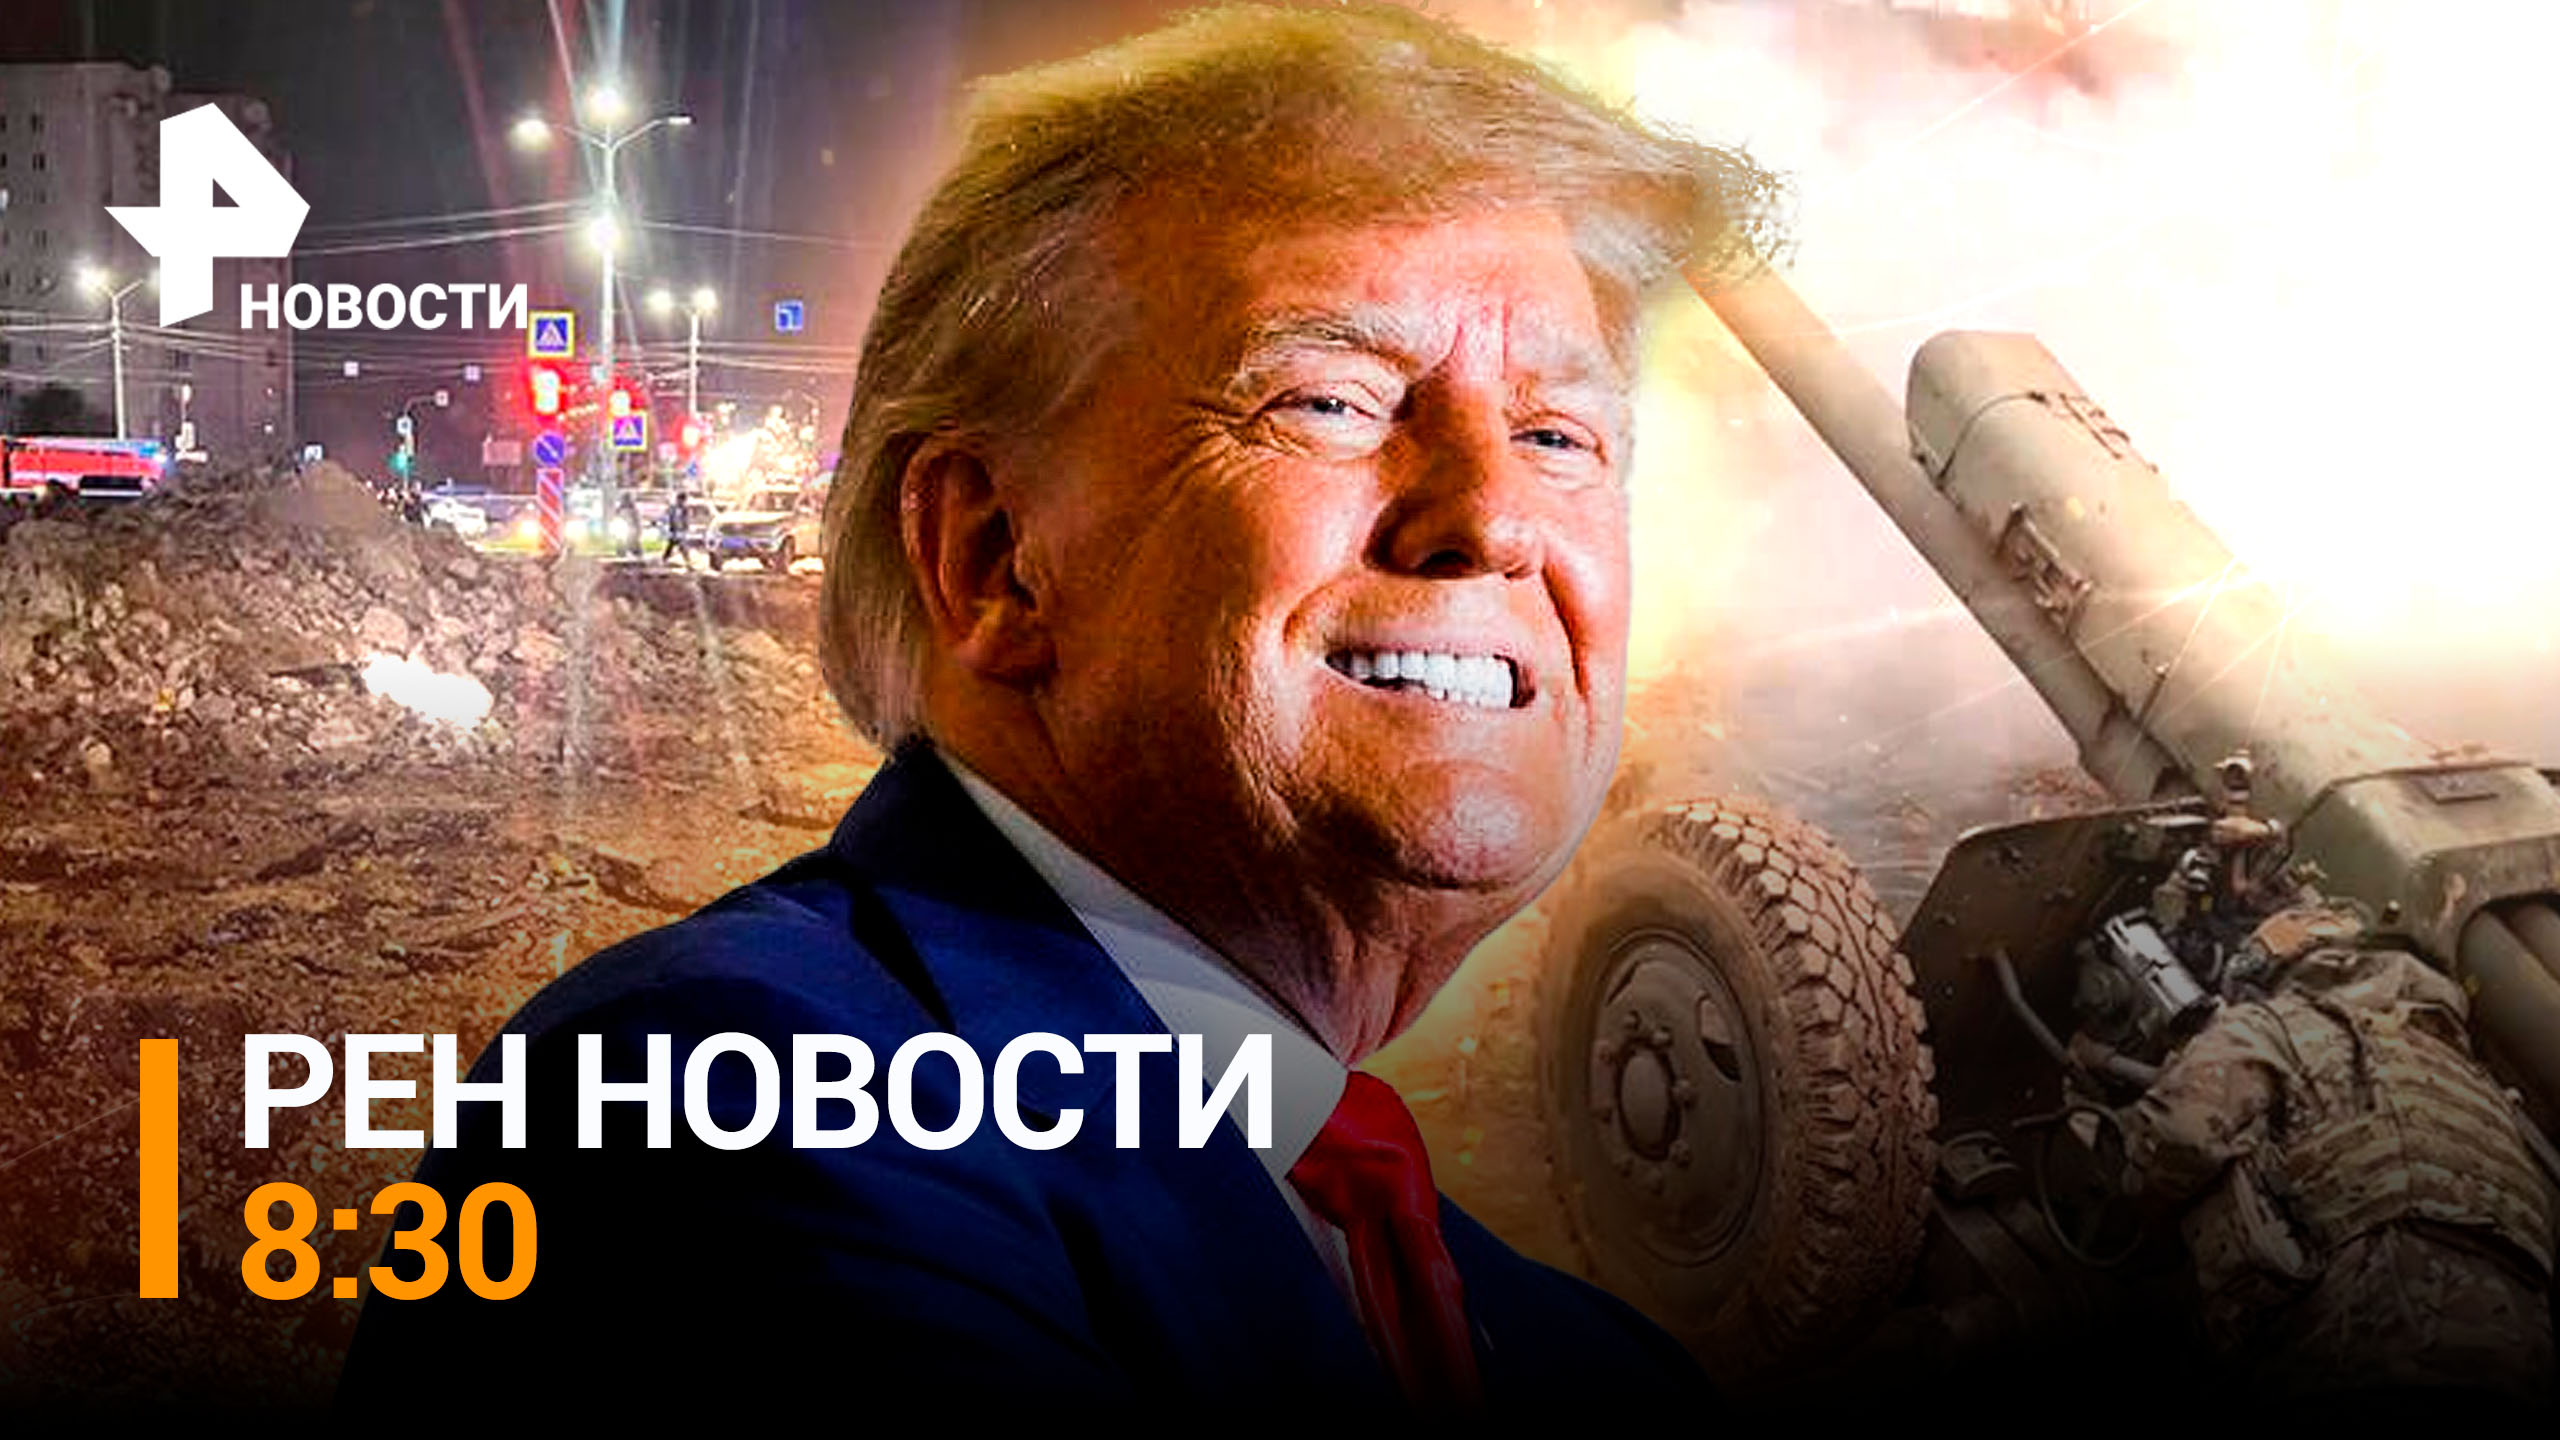 Американский Конгресс раскололся из-за поставок оружия Киеву / РЕН НОВОСТИ 8:30 от 21.04.23